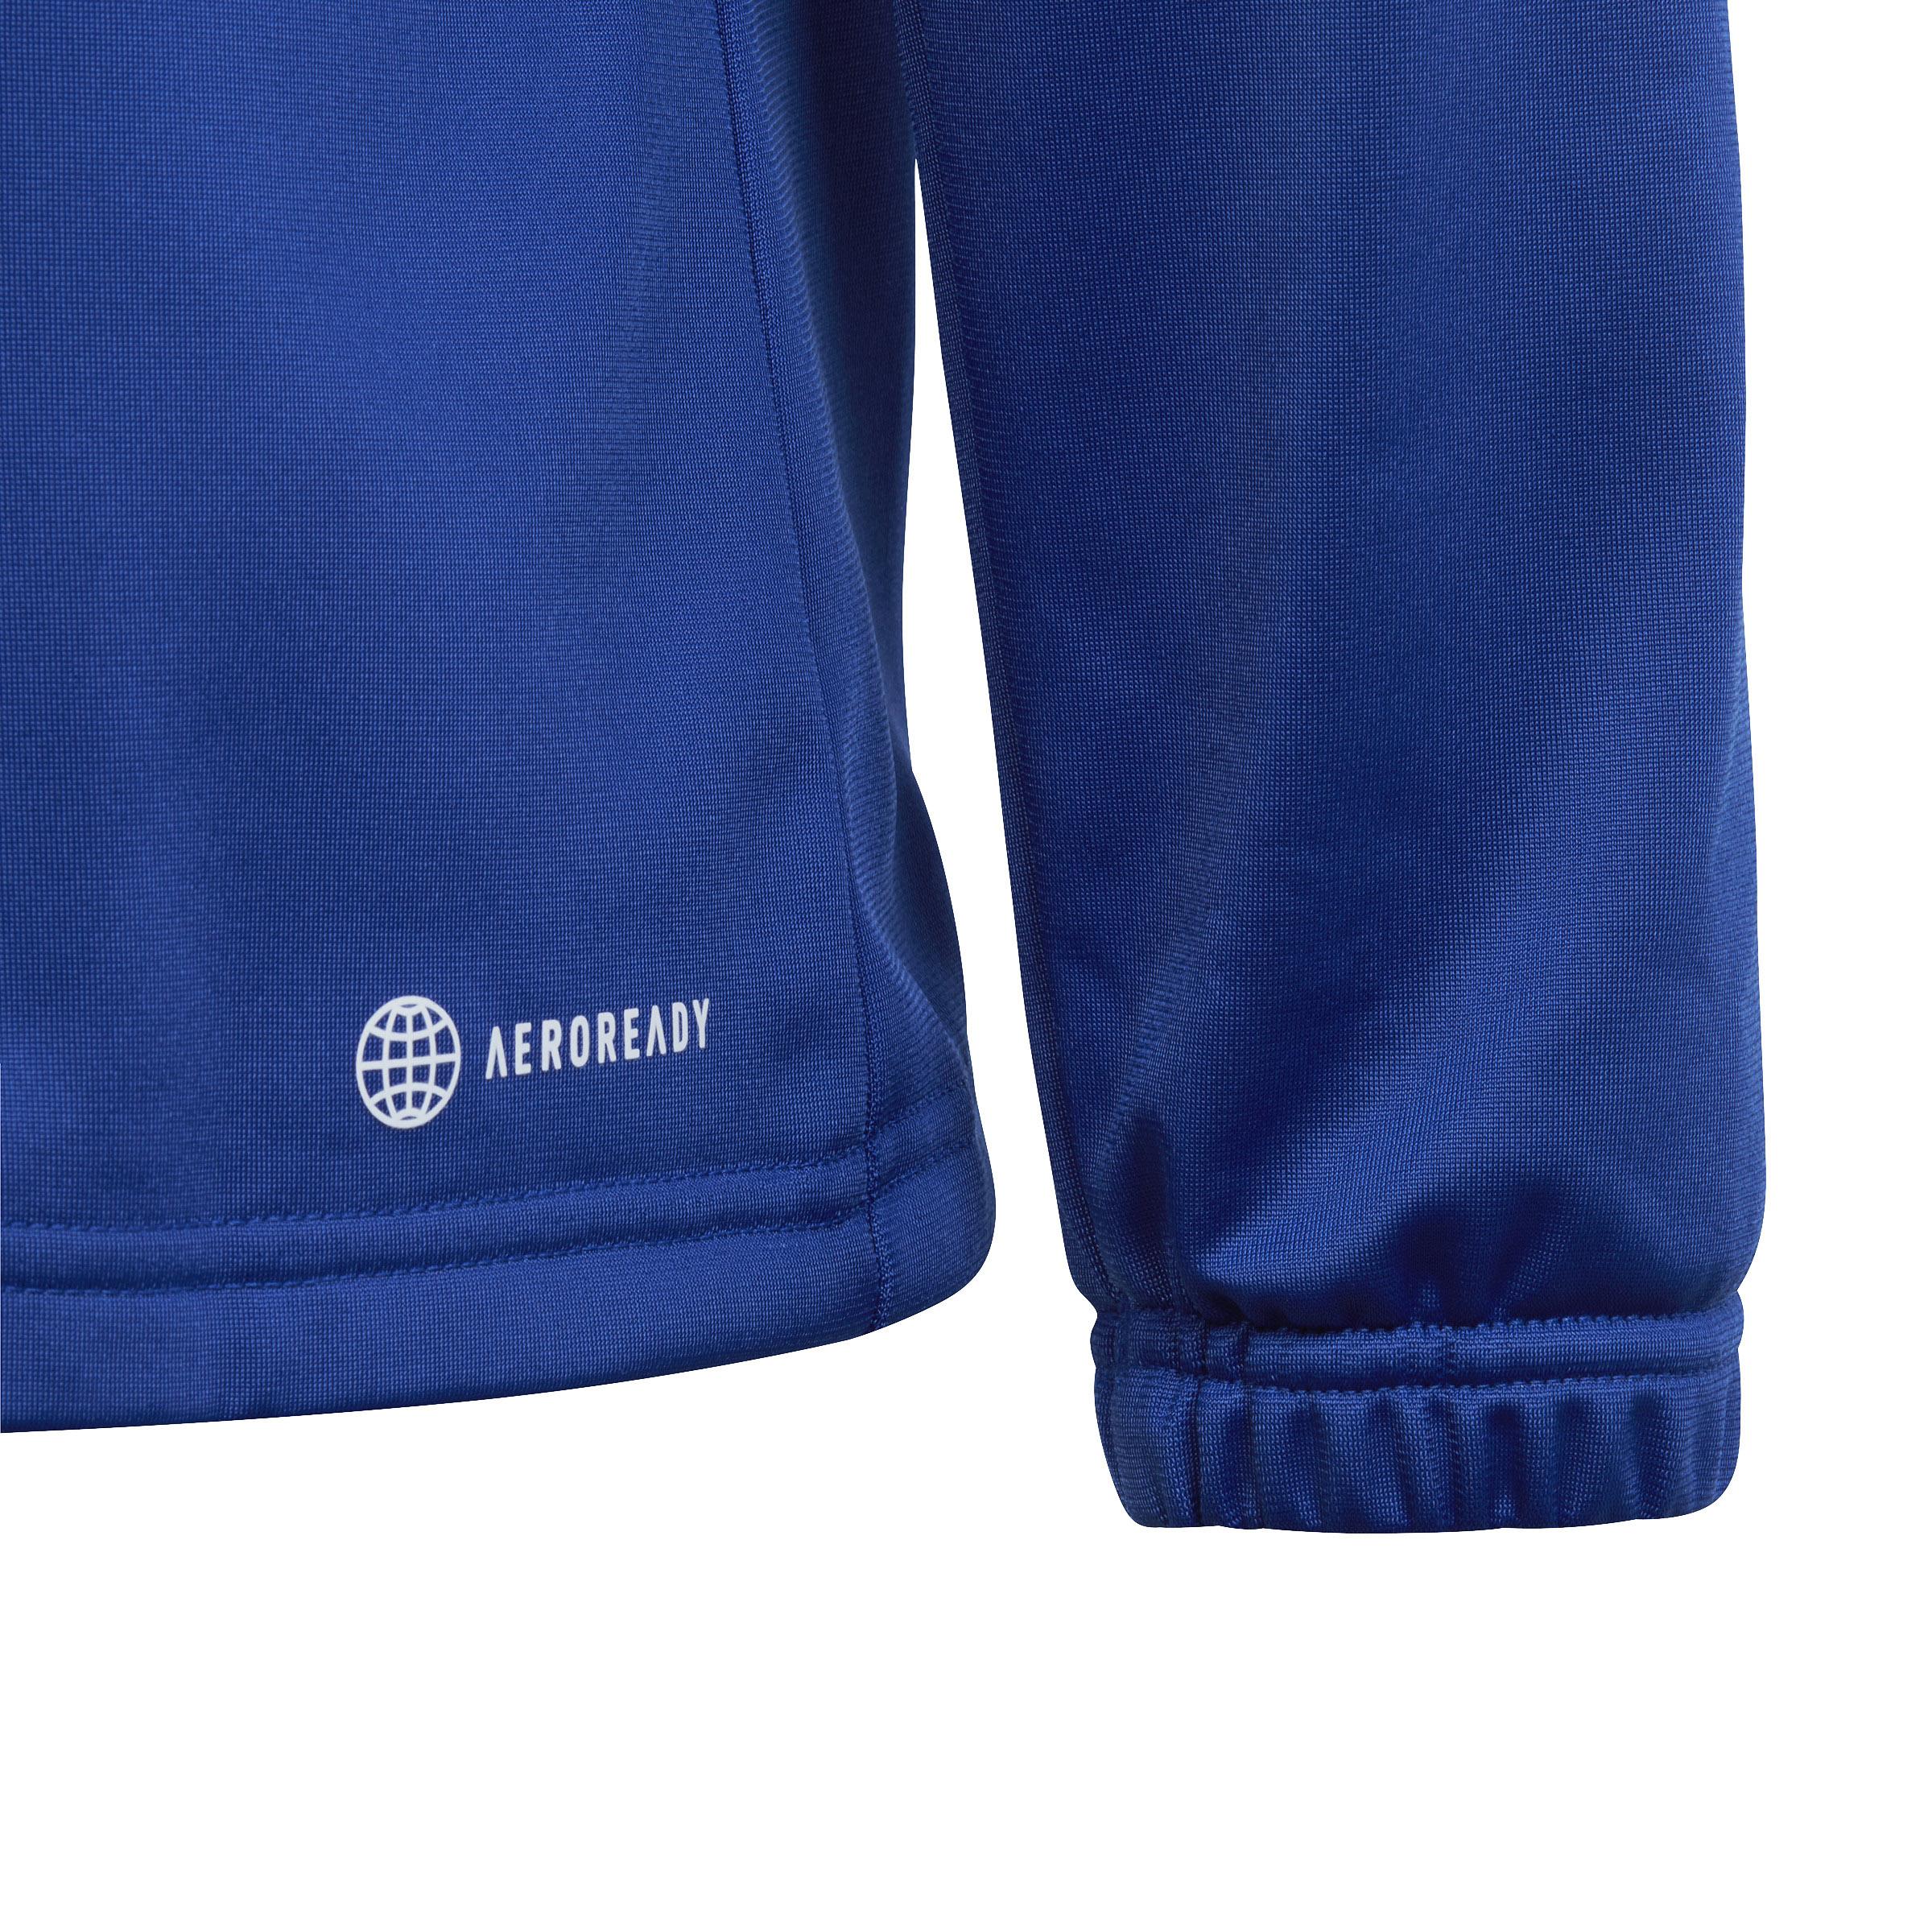 Adidas Trainingsanzug von Jungen semi lucid Shop im SportScheck kaufen Online blue-white-legend ink